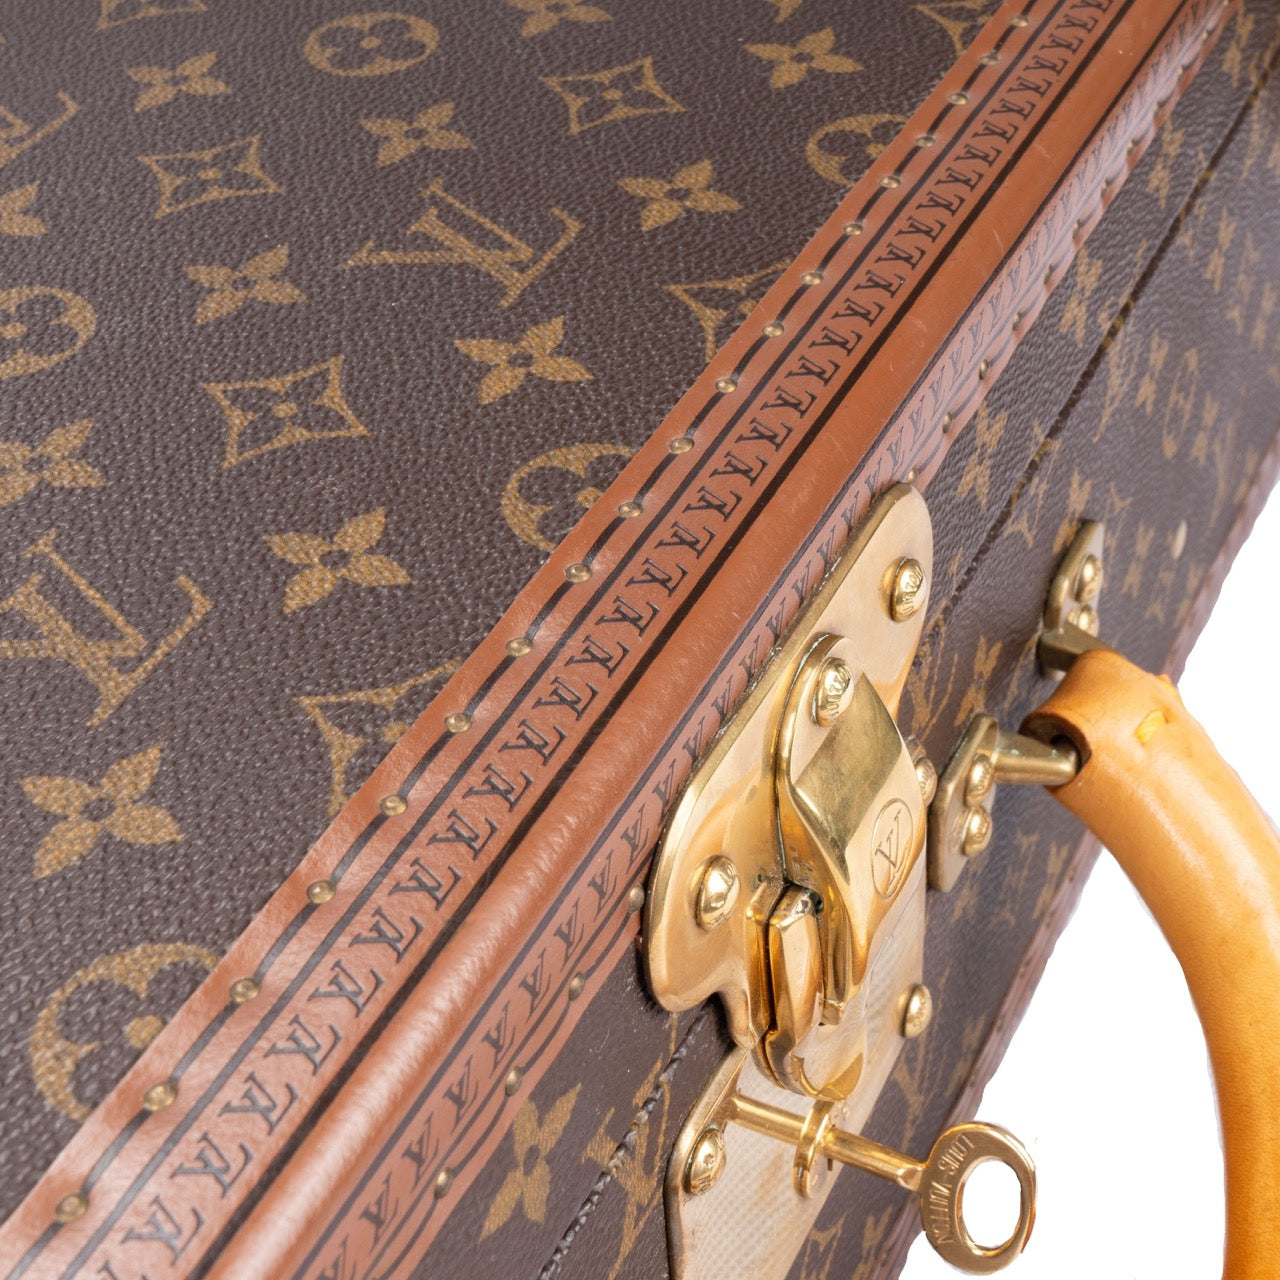 Louis Vuitton Canvas Monogram Bisten 65 Trunk Koffer